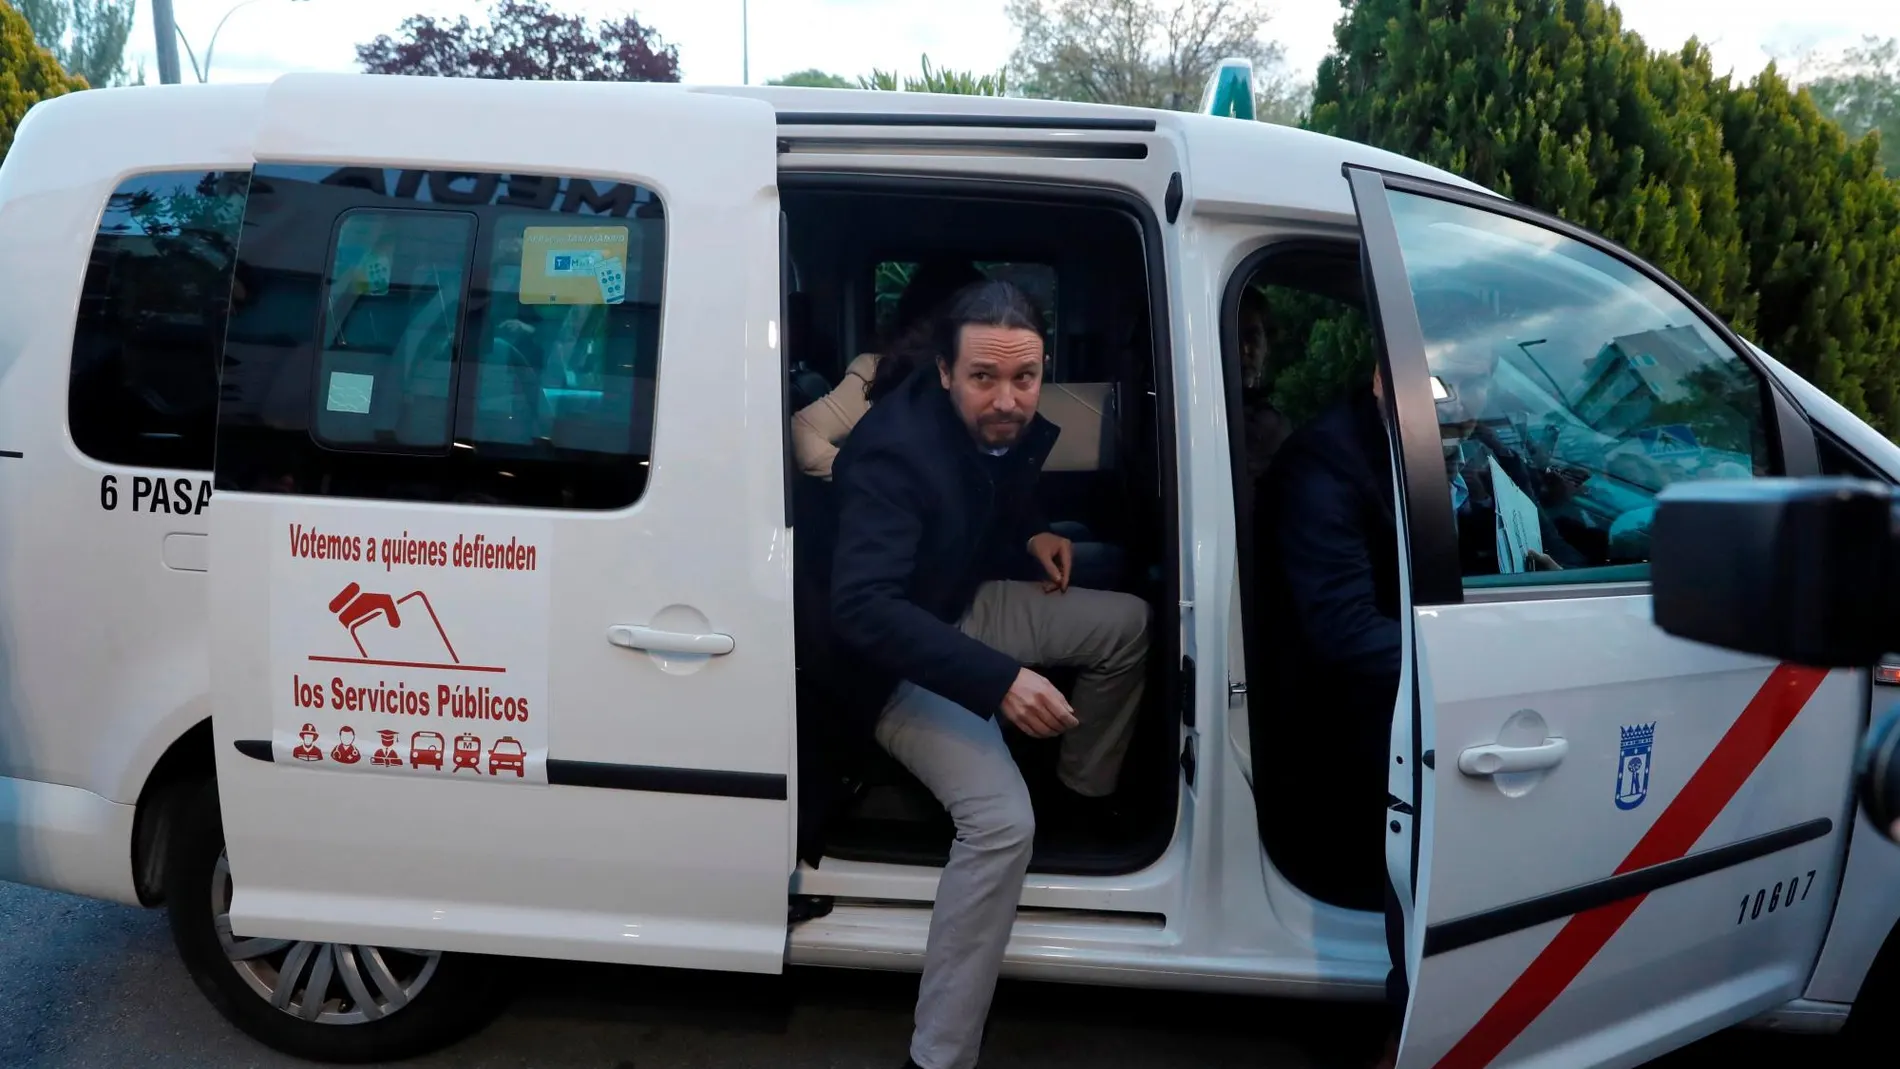 El líder de Unidas Podemos, Pablo Iglesias, a su llegada en taxi a las instalaciones de Atresmedia